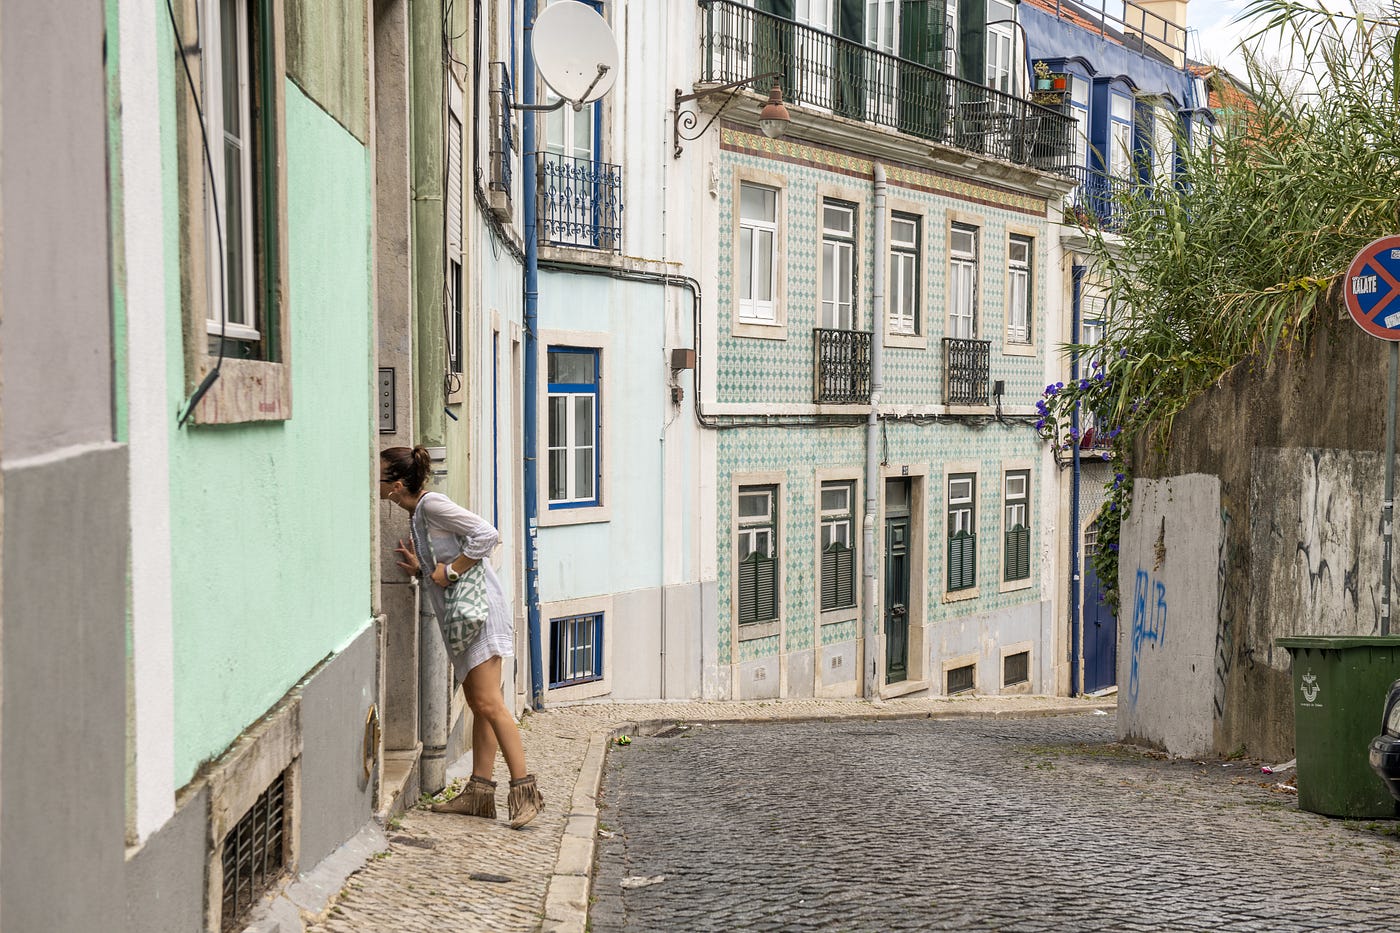 Woman peeking through a house in Portugal.